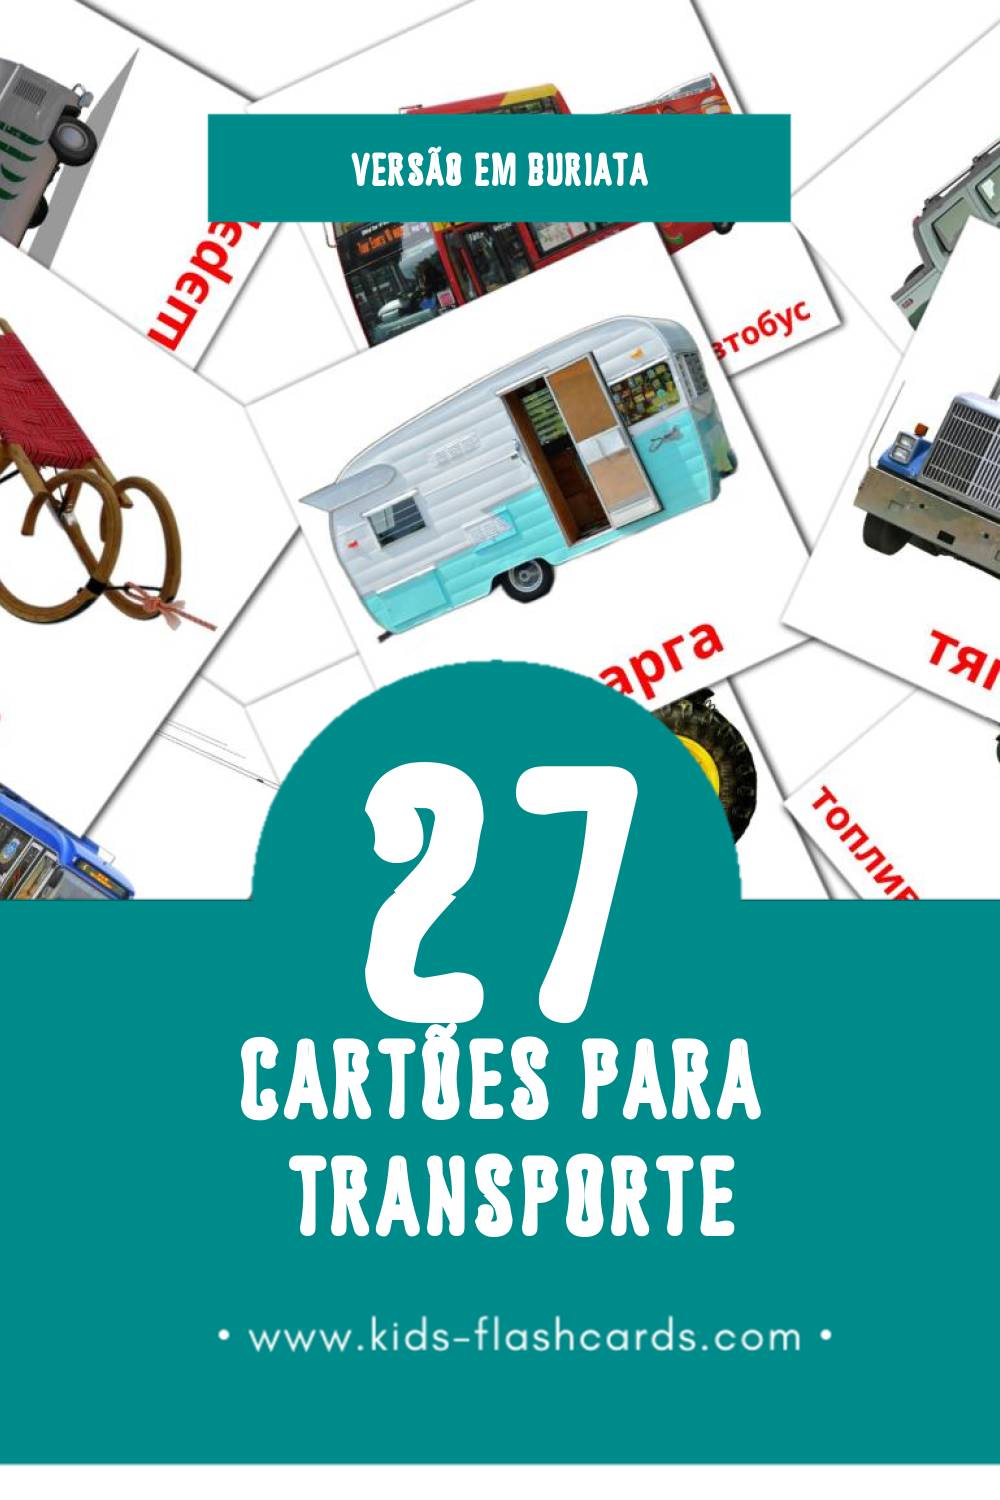 Flashcards de Транспорт Visuais para Toddlers (27 cartões em Buriata)